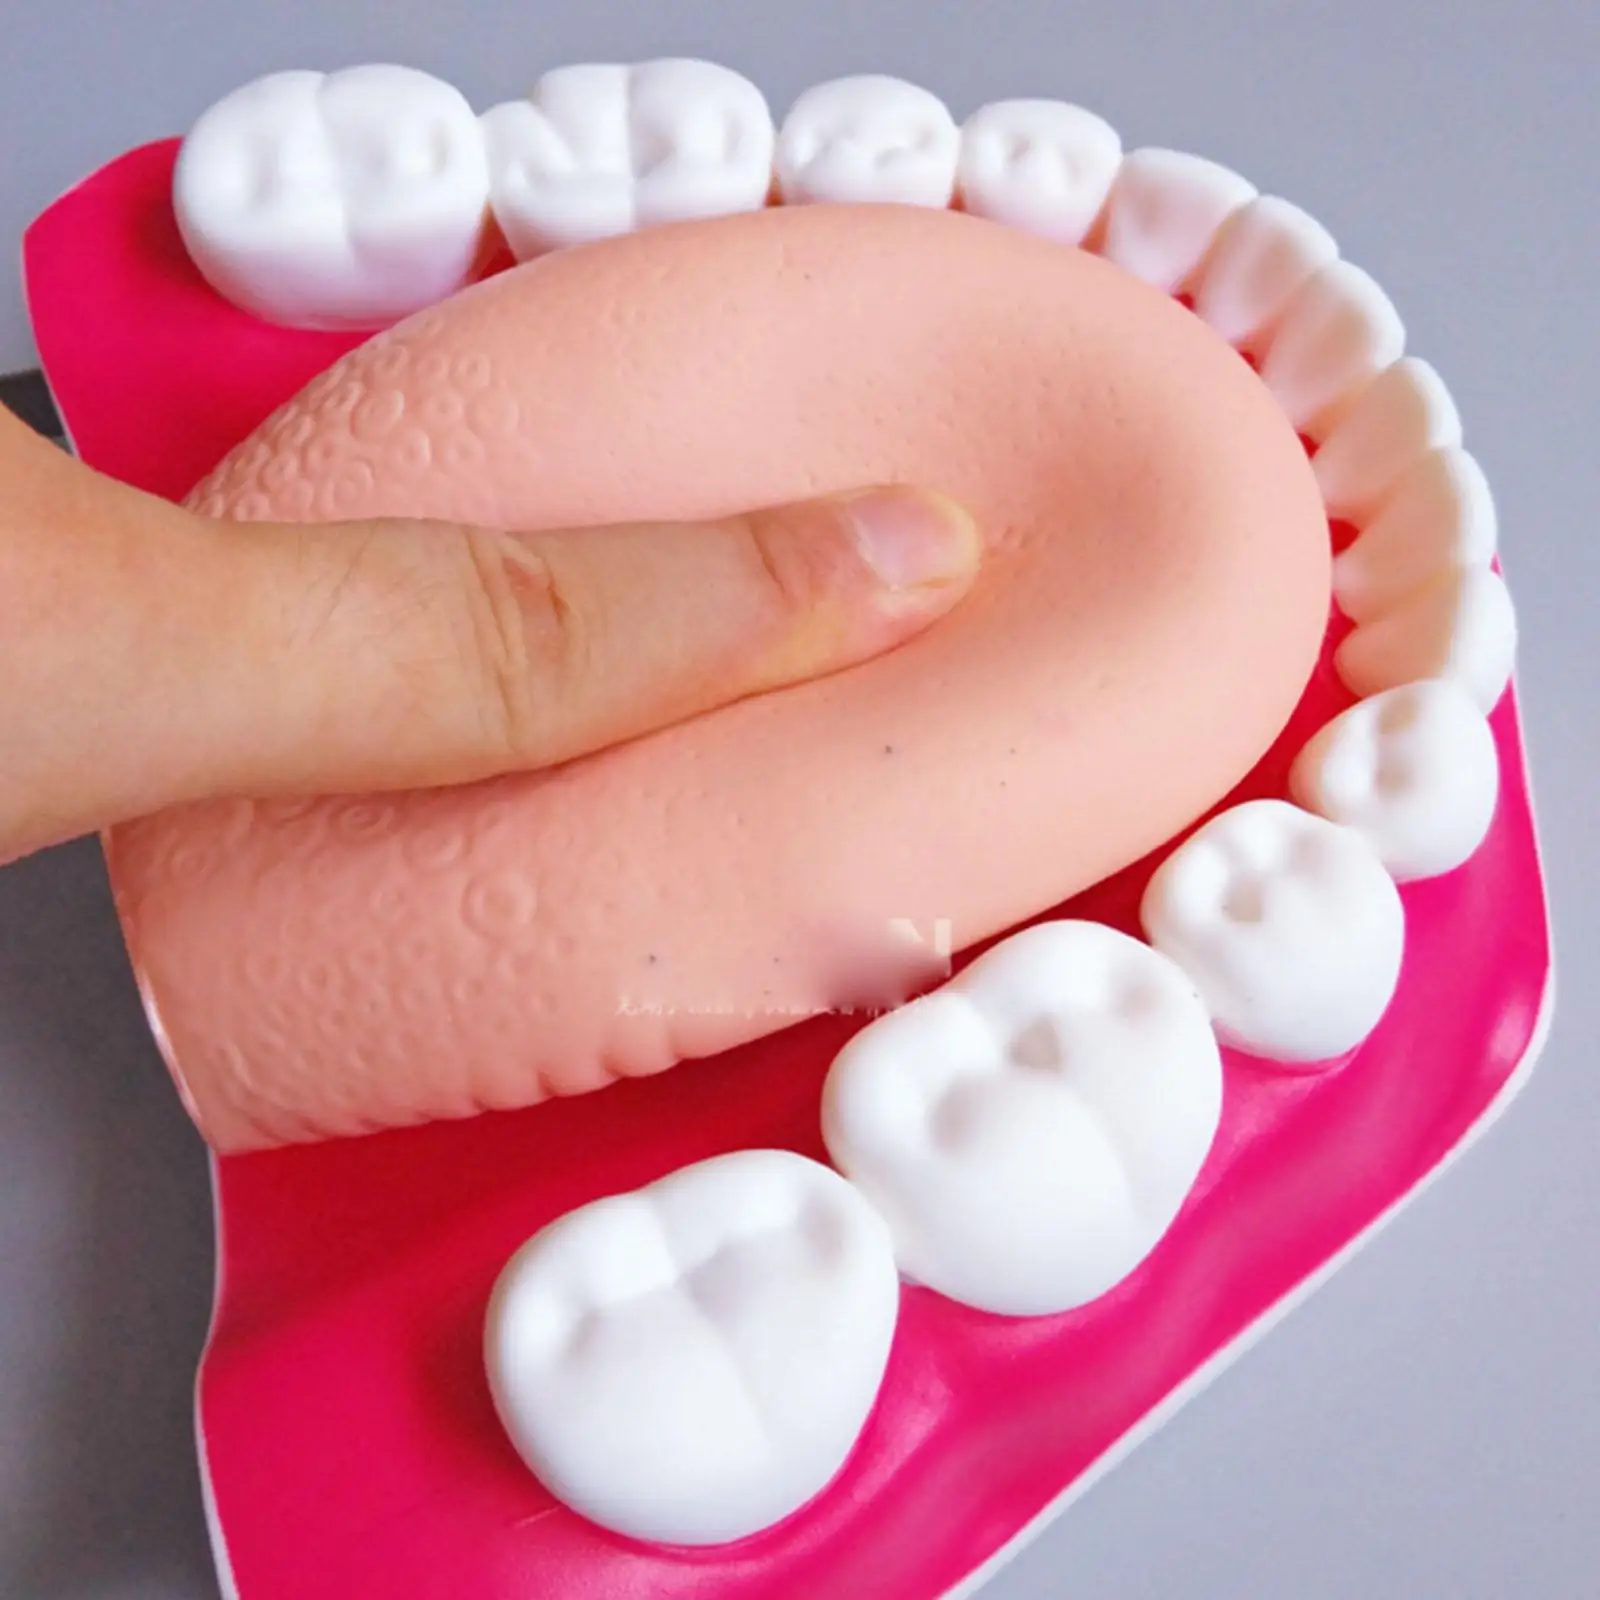 ПВХ с 3-кратным увеличением Стоматологический кабинет Обучение Чистке зубов Модель Обучения зубам - 3